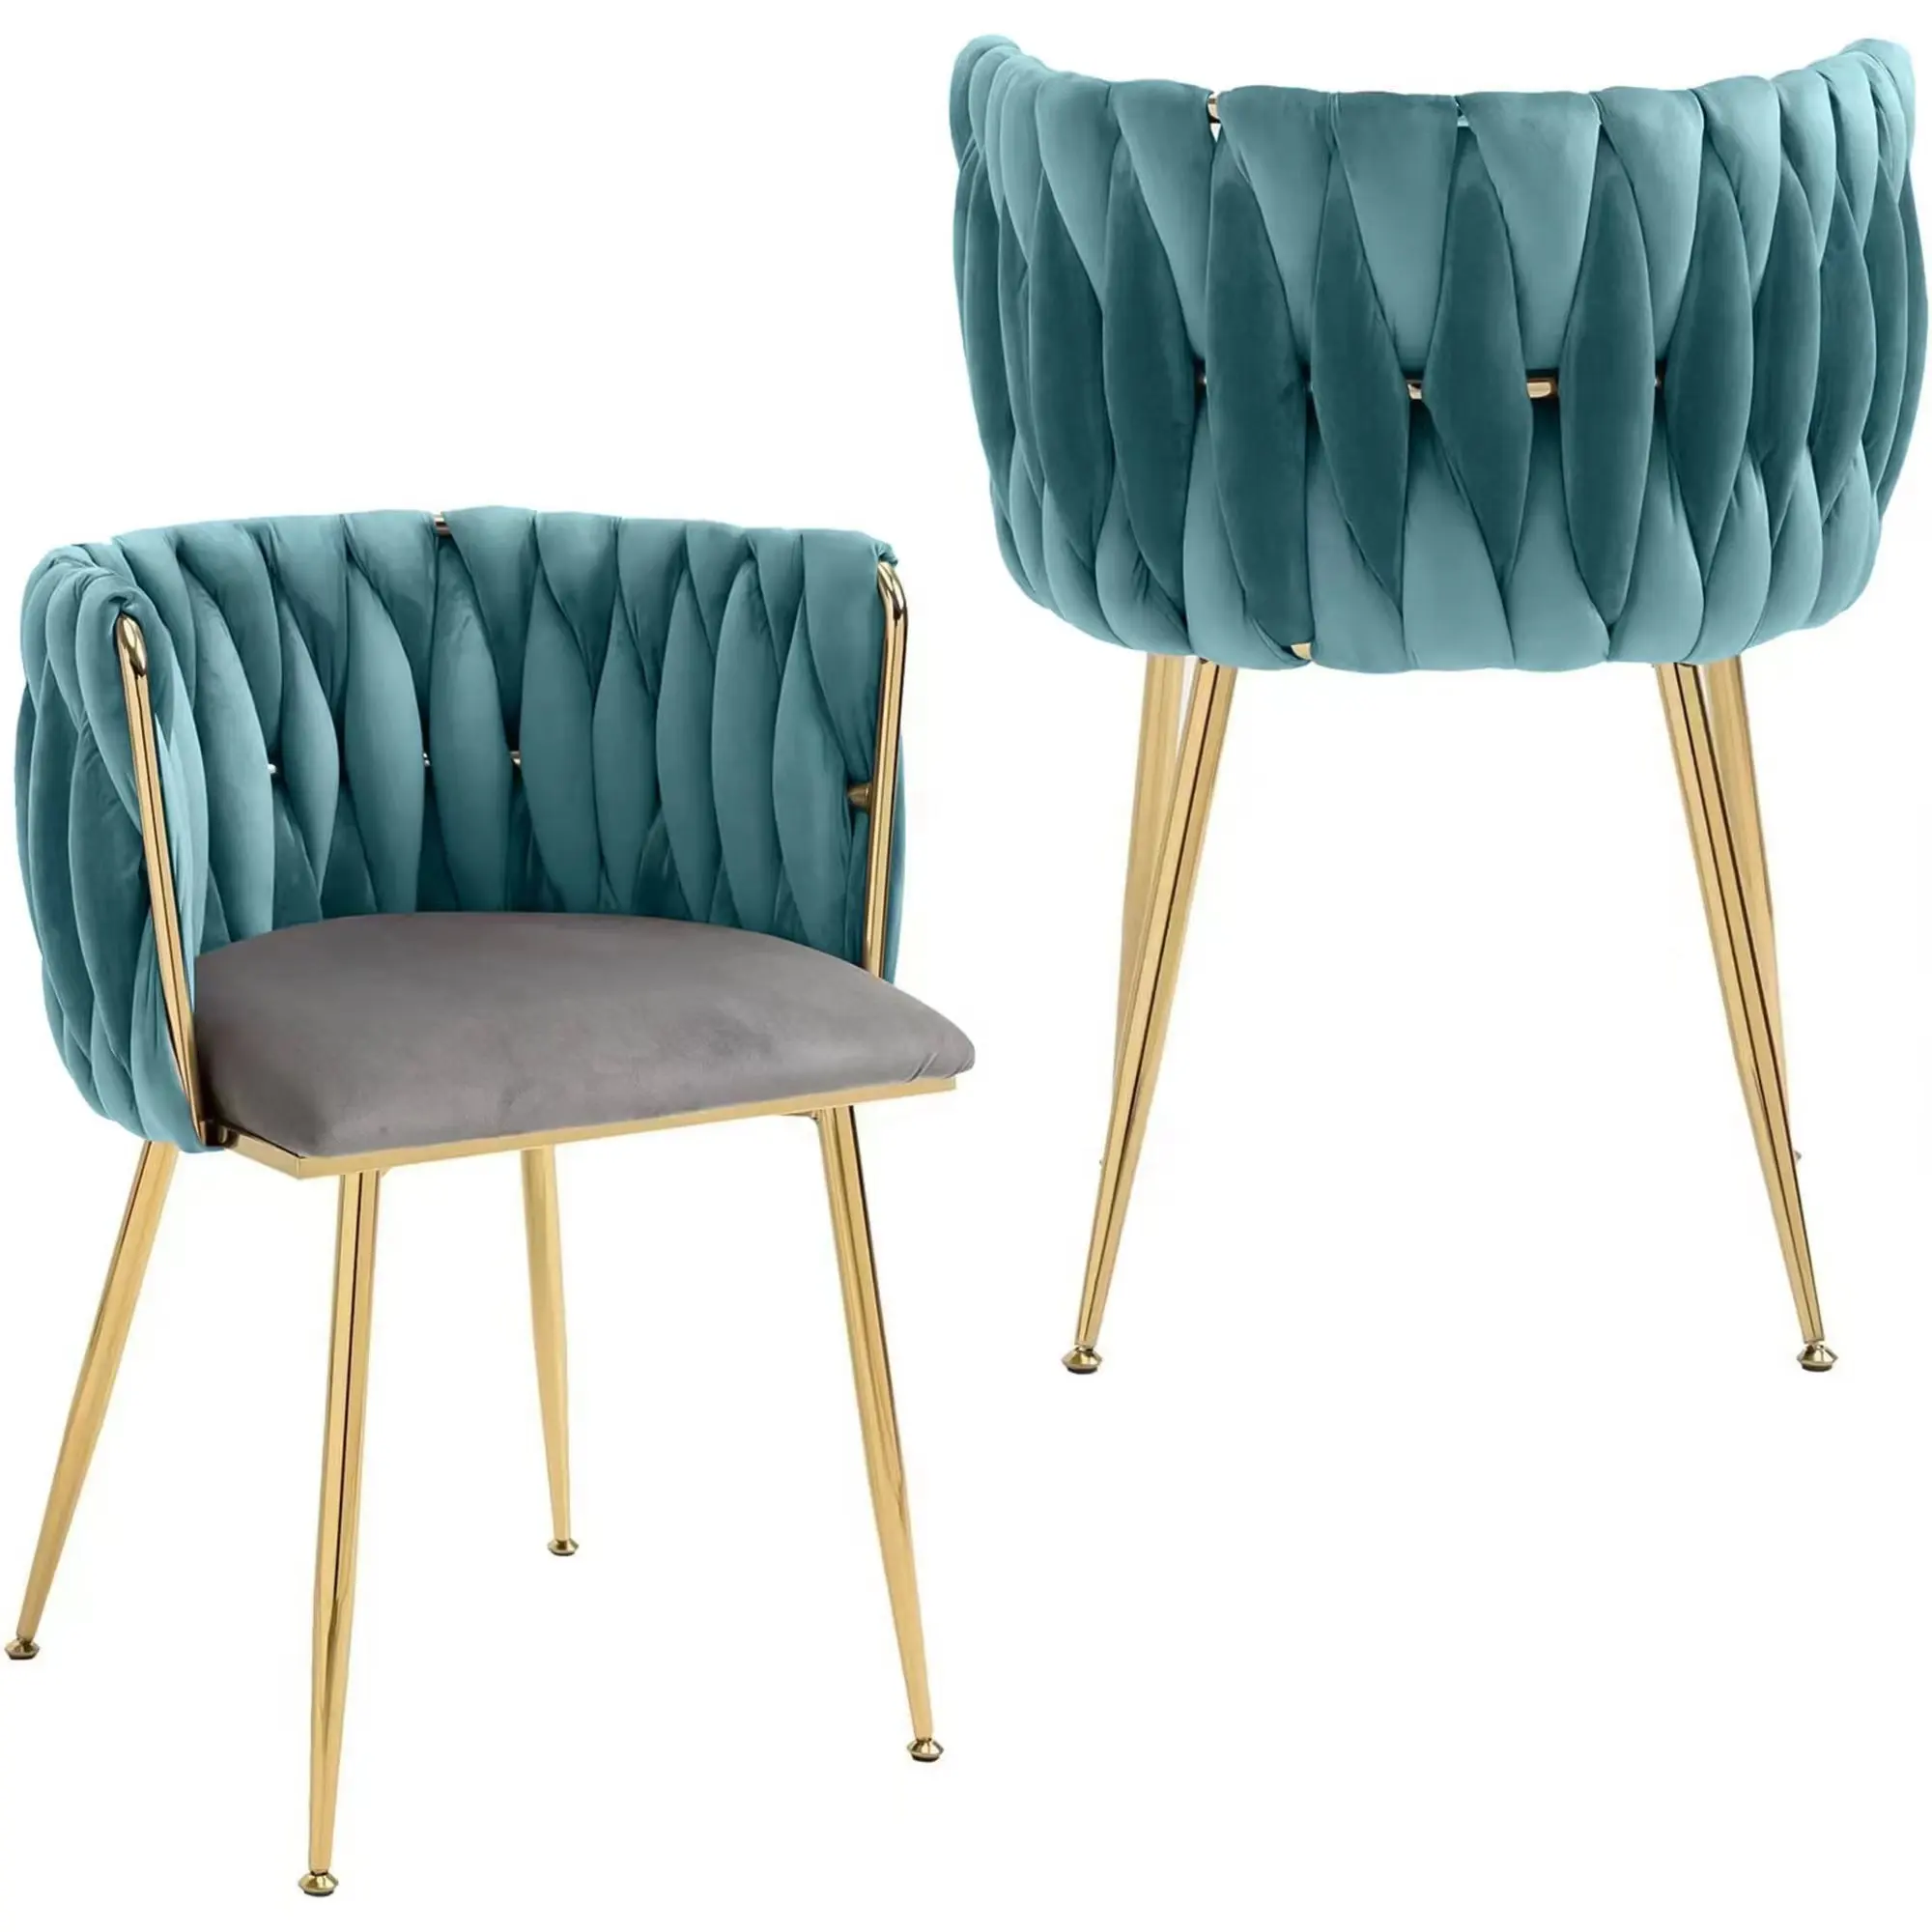 Sofá esponjoso de diseño creativo, sillón de terciopelo nórdico para manicura, silla cómoda con respaldo